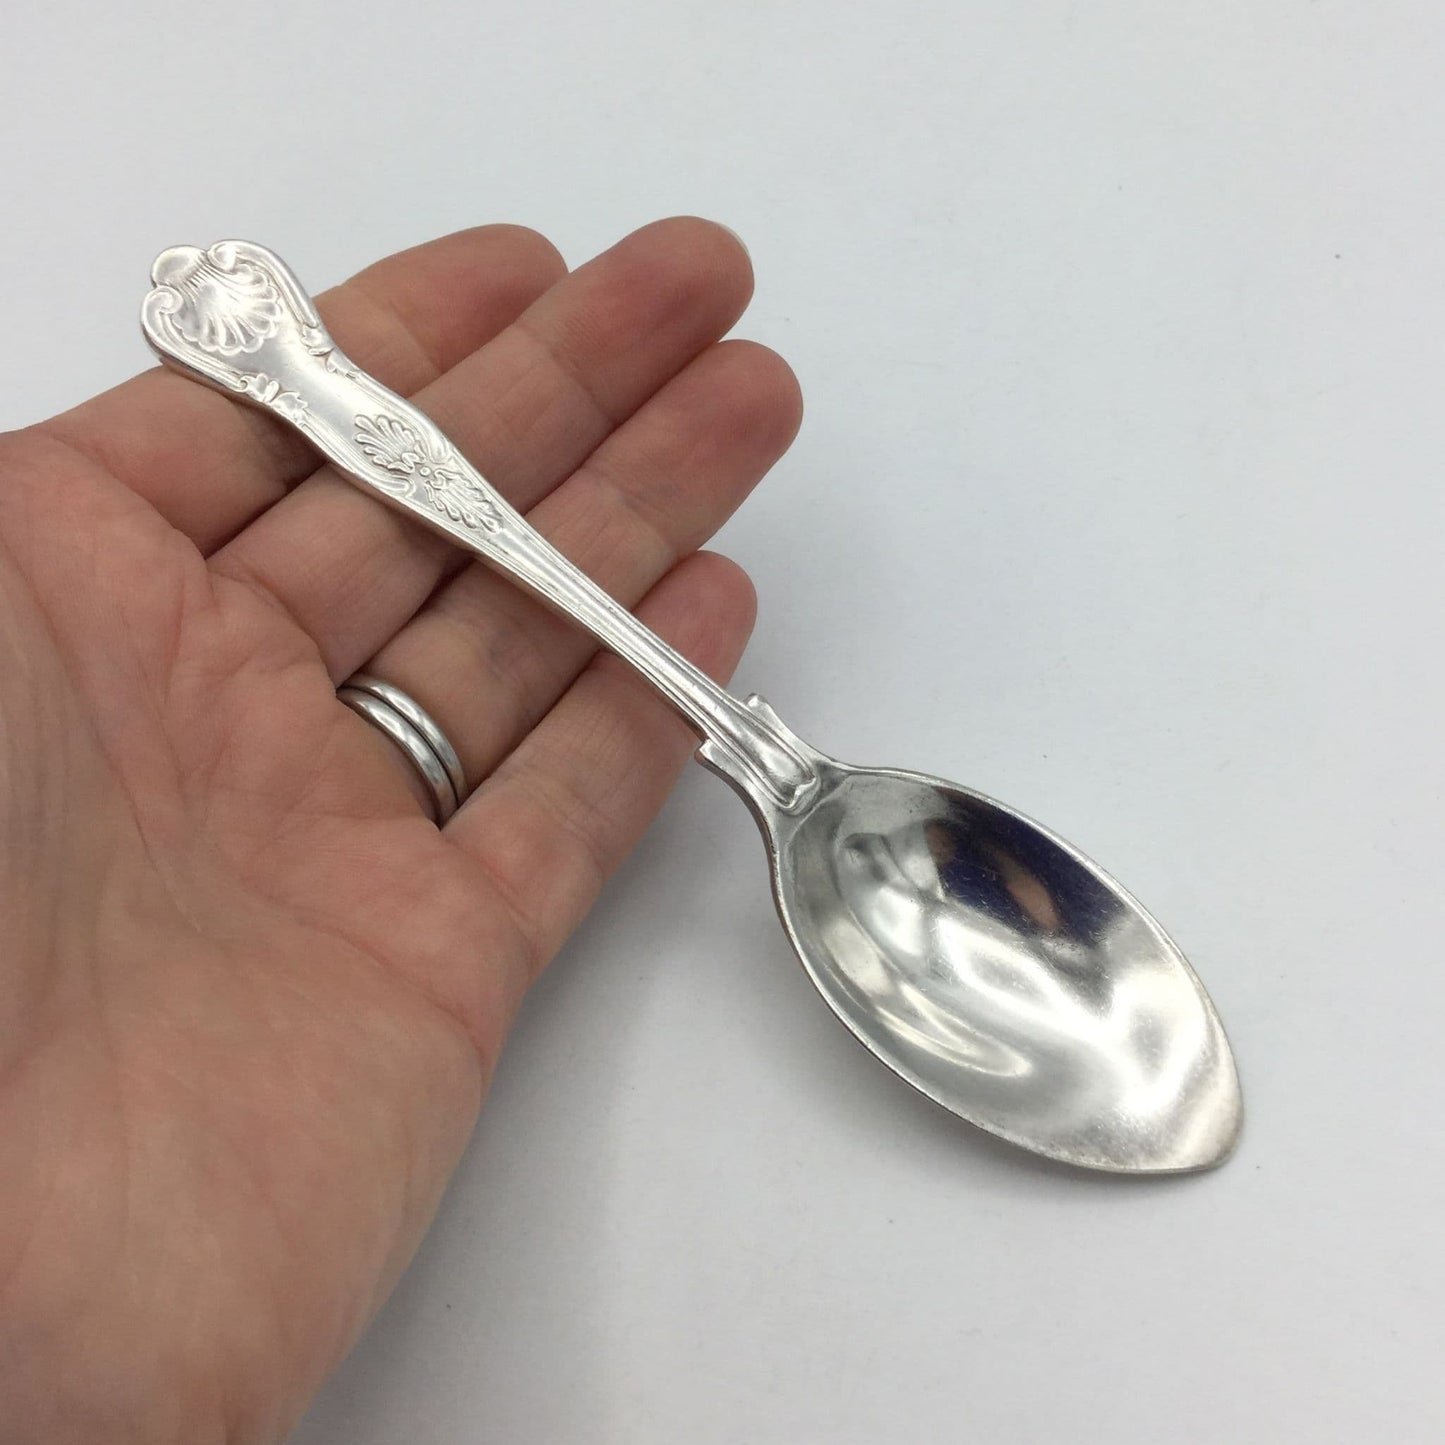 Vintage 1950s Silver Plated Tea Spoon, Medicine Spoon